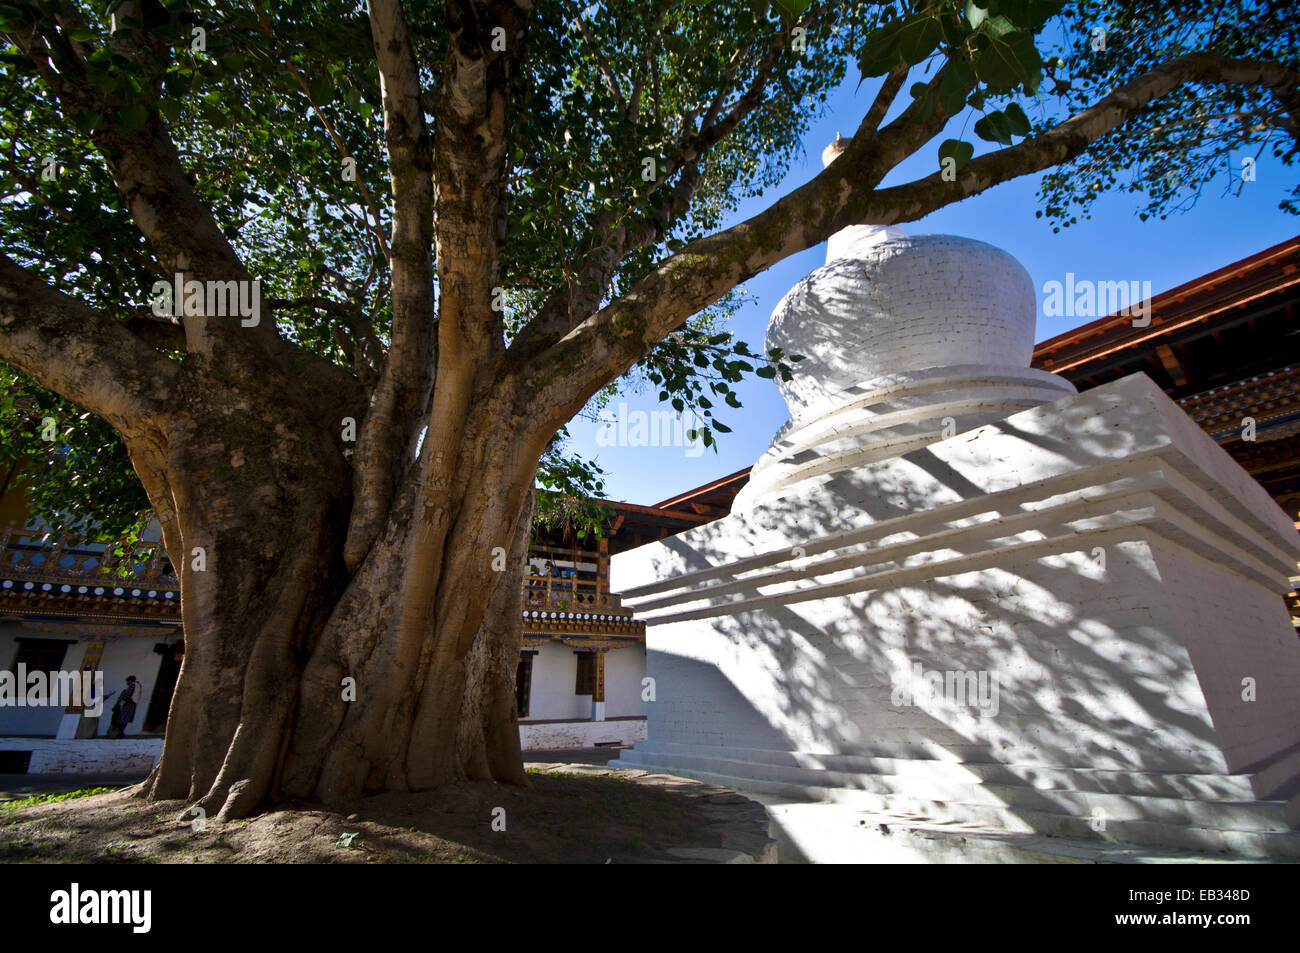 Un antiguo árbol extiende su amplia cubierta sobre un chorten en el patio de un monasterio budista. Foto de stock